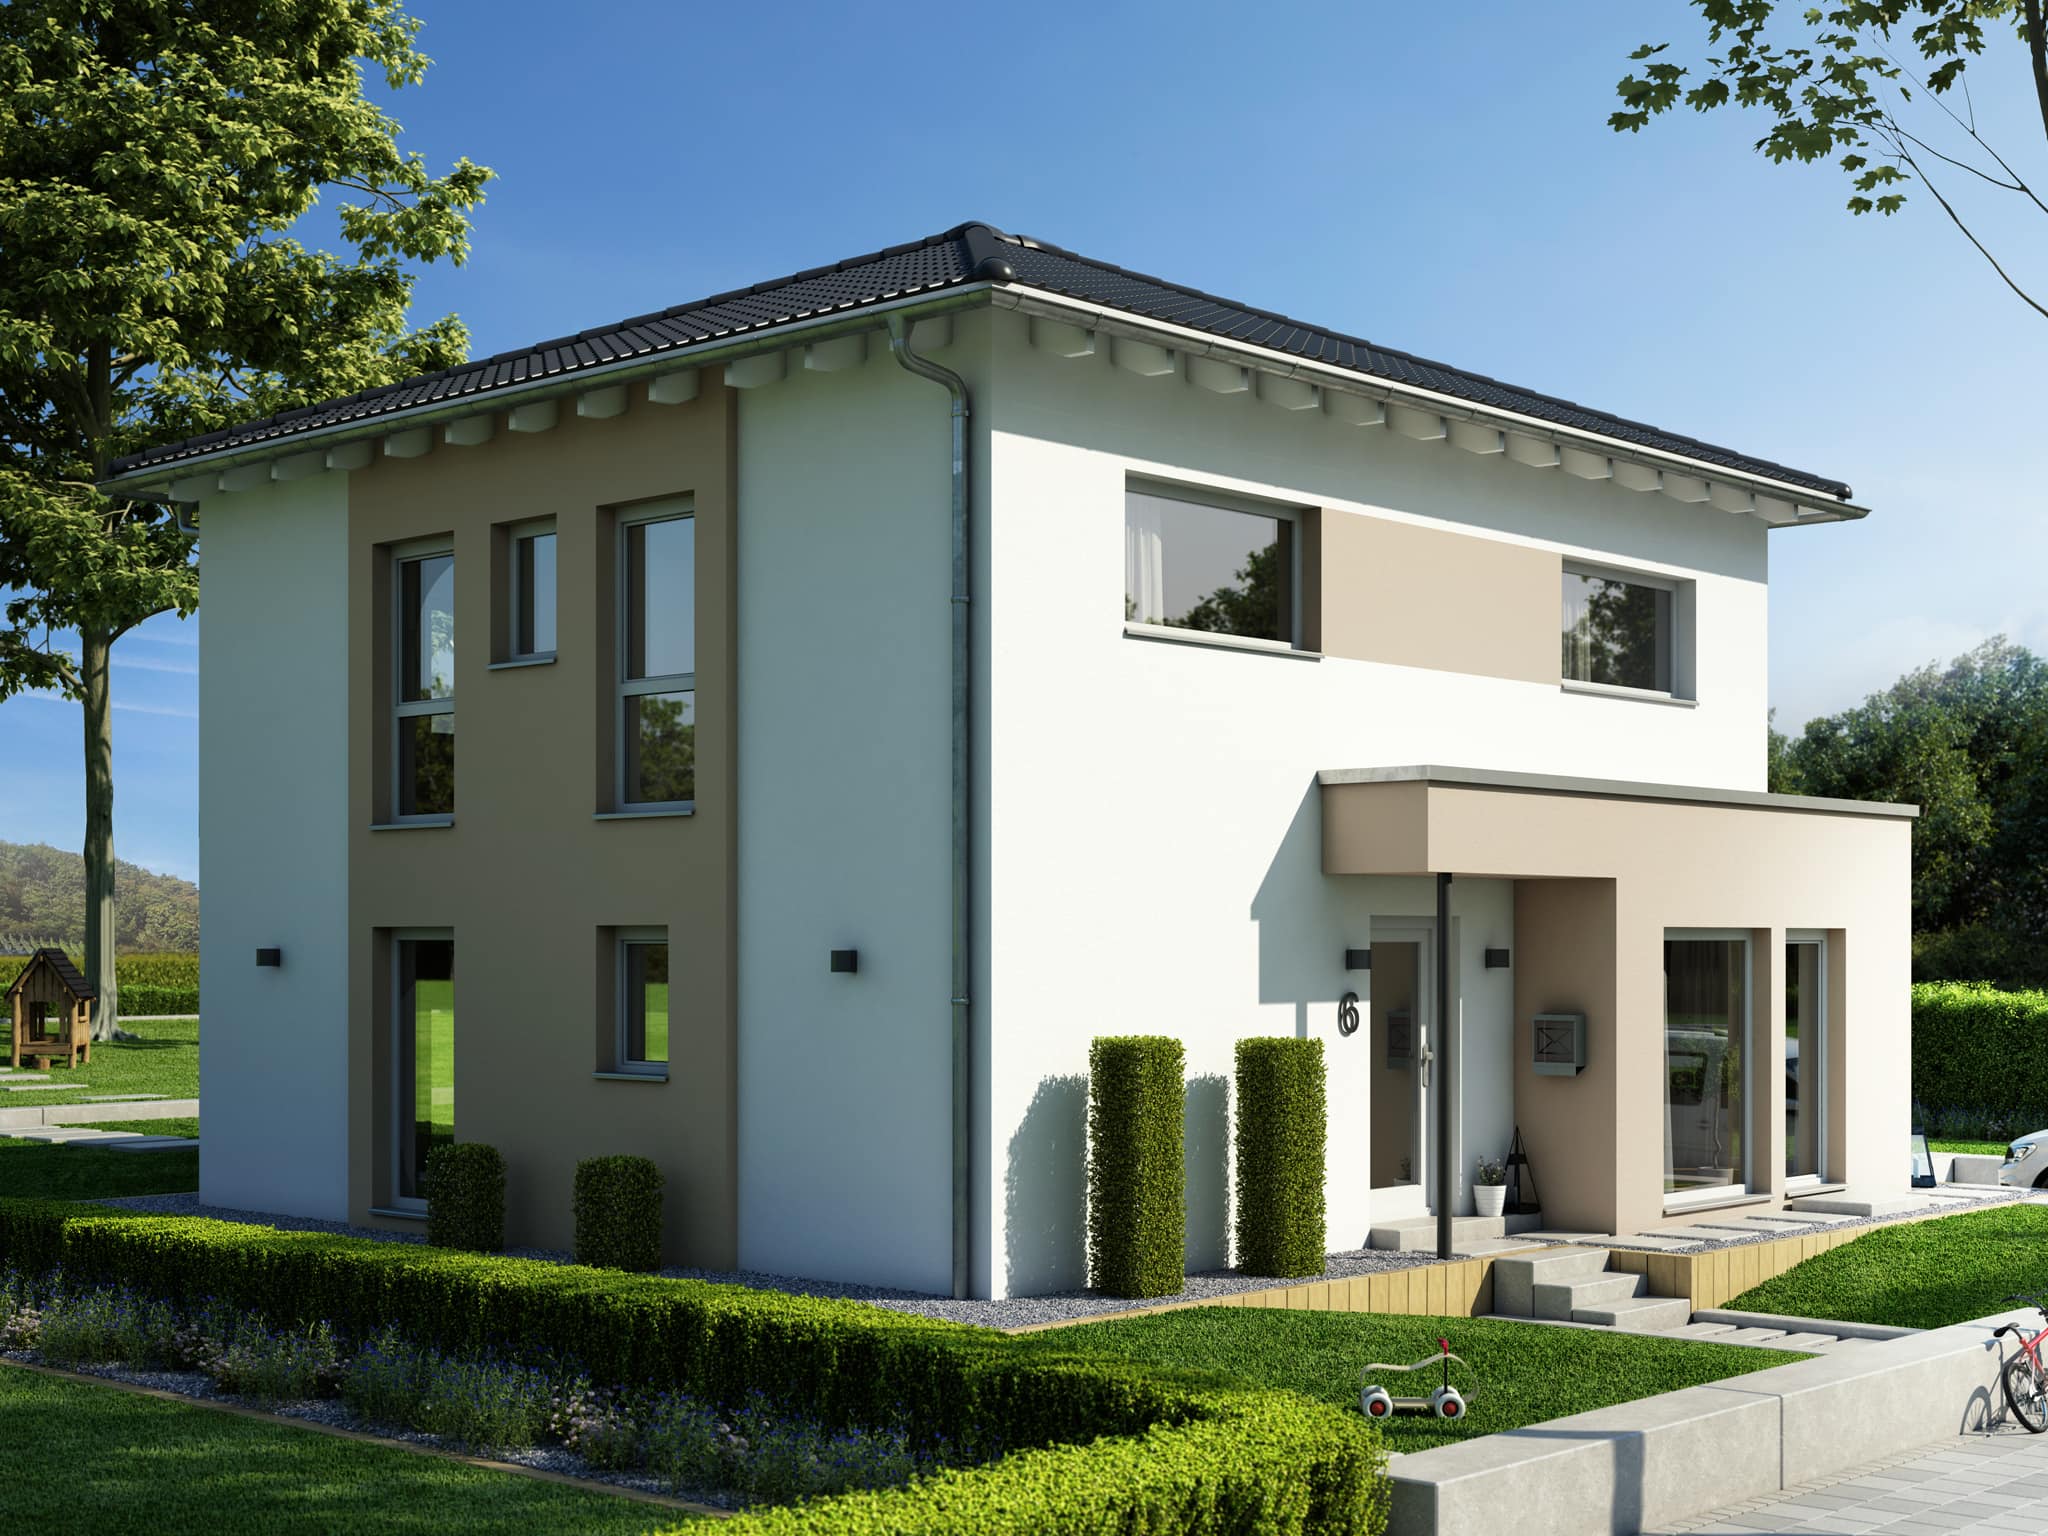 Stadtvilla modern mit Walmdach & Erker, 5 Zimmer Grundriss, 150 qm - Fertighaus SUNSHINE 154 V6 von Living Haus - HausbauDirekt.de